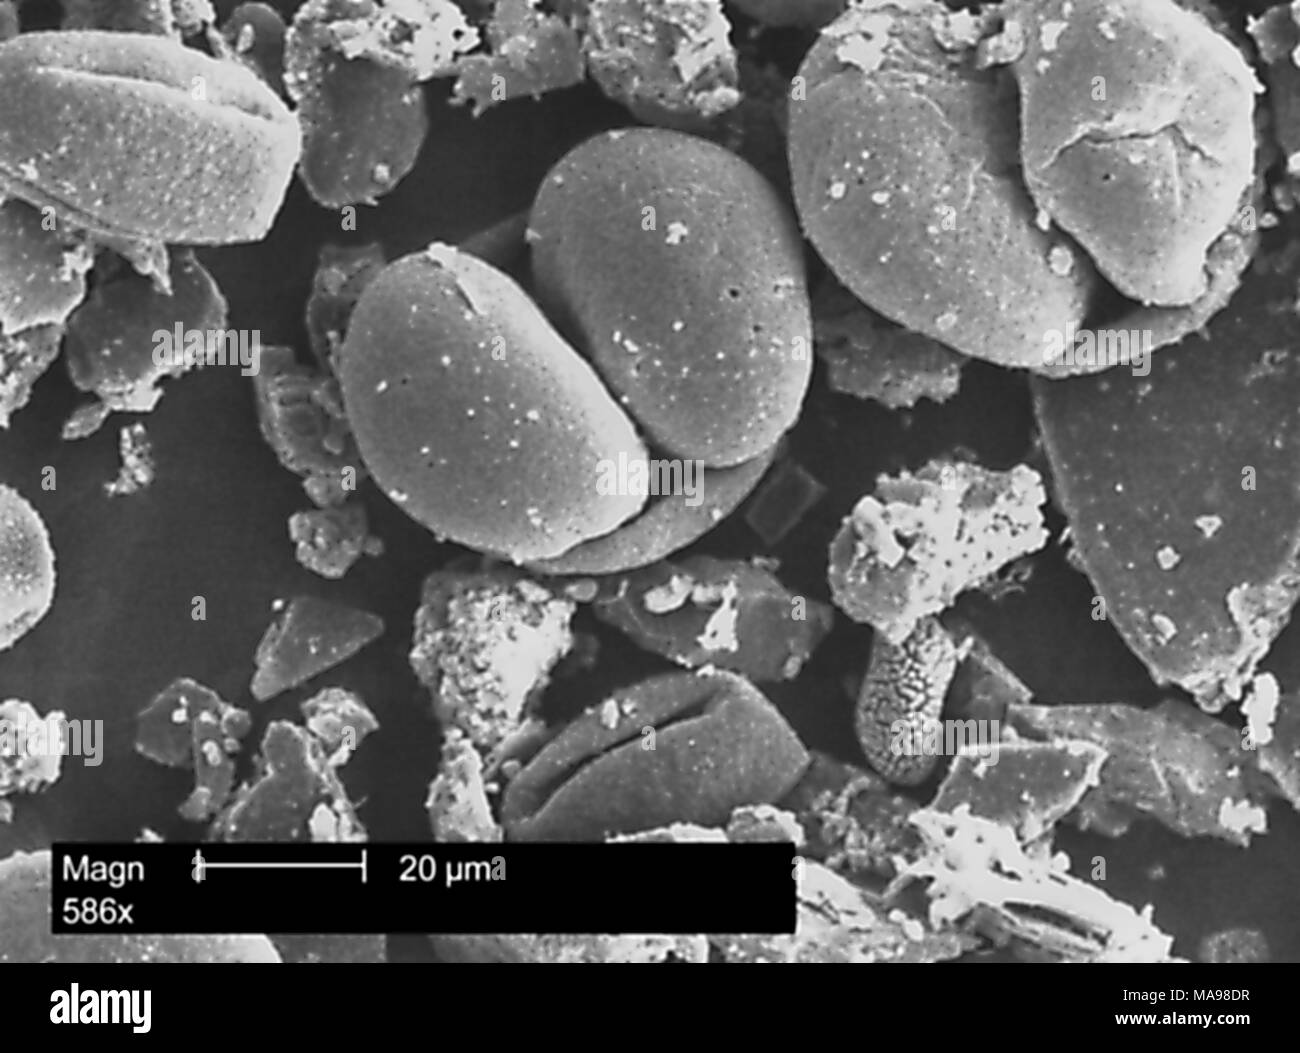 Array morfologiche di granuli di polline rivelato nella microfotografia film, centri per il controllo delle malattie (CDC) campus, Atlanta, Georgia, 2004. Immagine cortesia centri per il controllo delle malattie / Janice Haney Carr. () Foto Stock